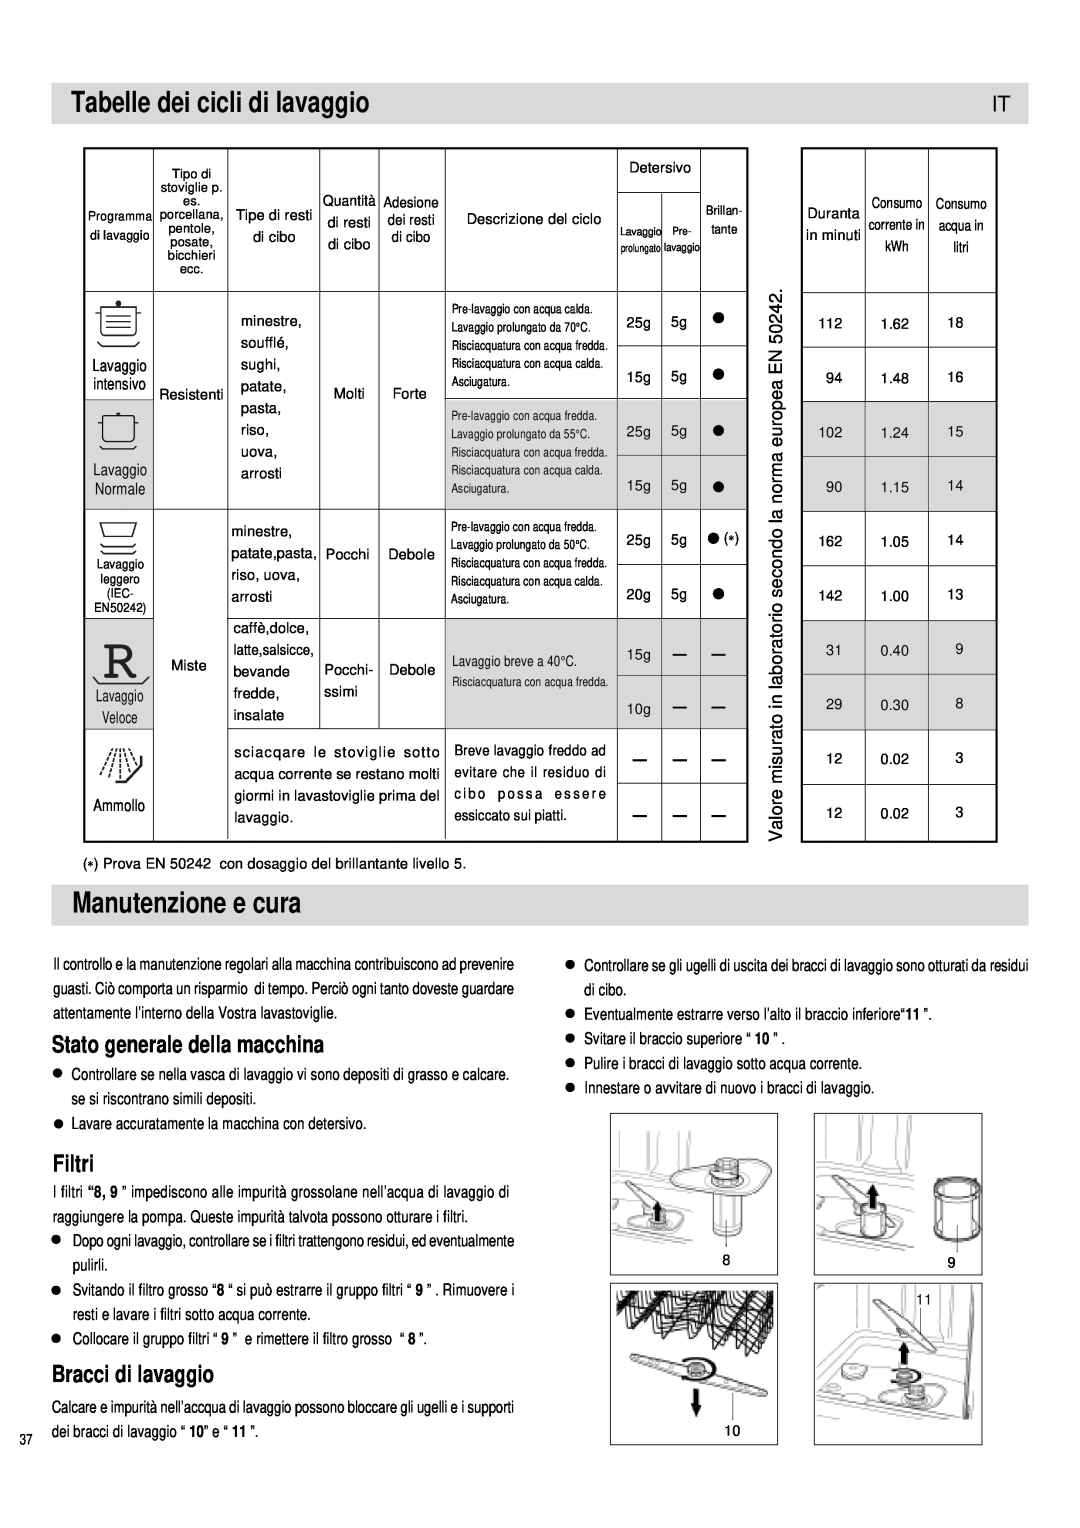 Haier DW12-PFE1 ME Manutenzione e cura, Tabelle dei cicli di lavaggio, Stato generale della macchina, Filtri, europea 